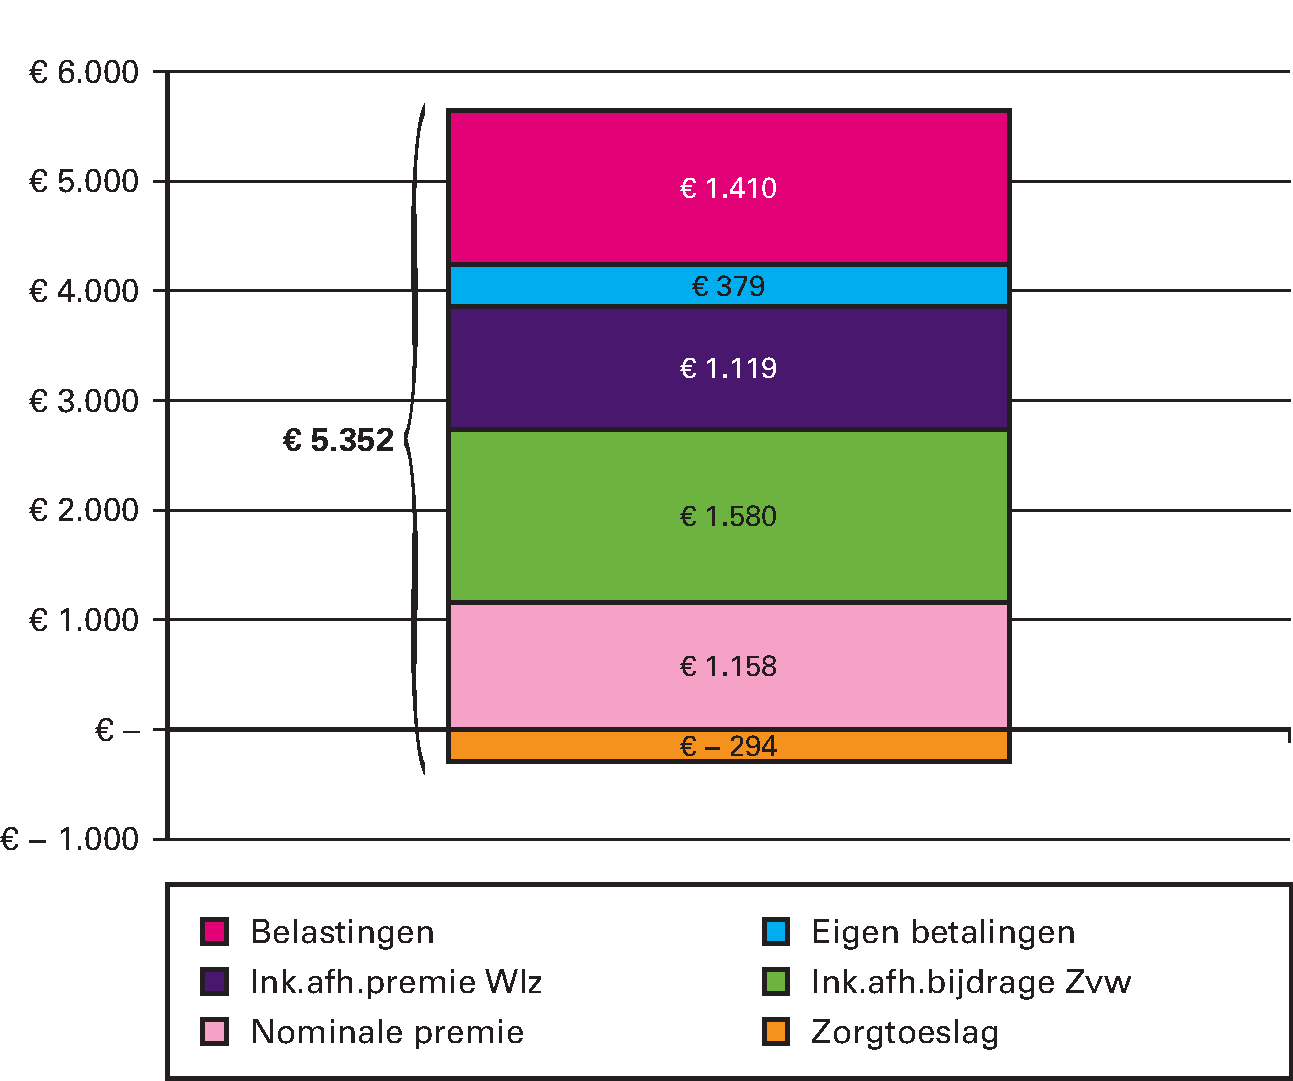 Figuur 3, lasten per volwassene aan zorg in 2015 (in euro’s per jaar)